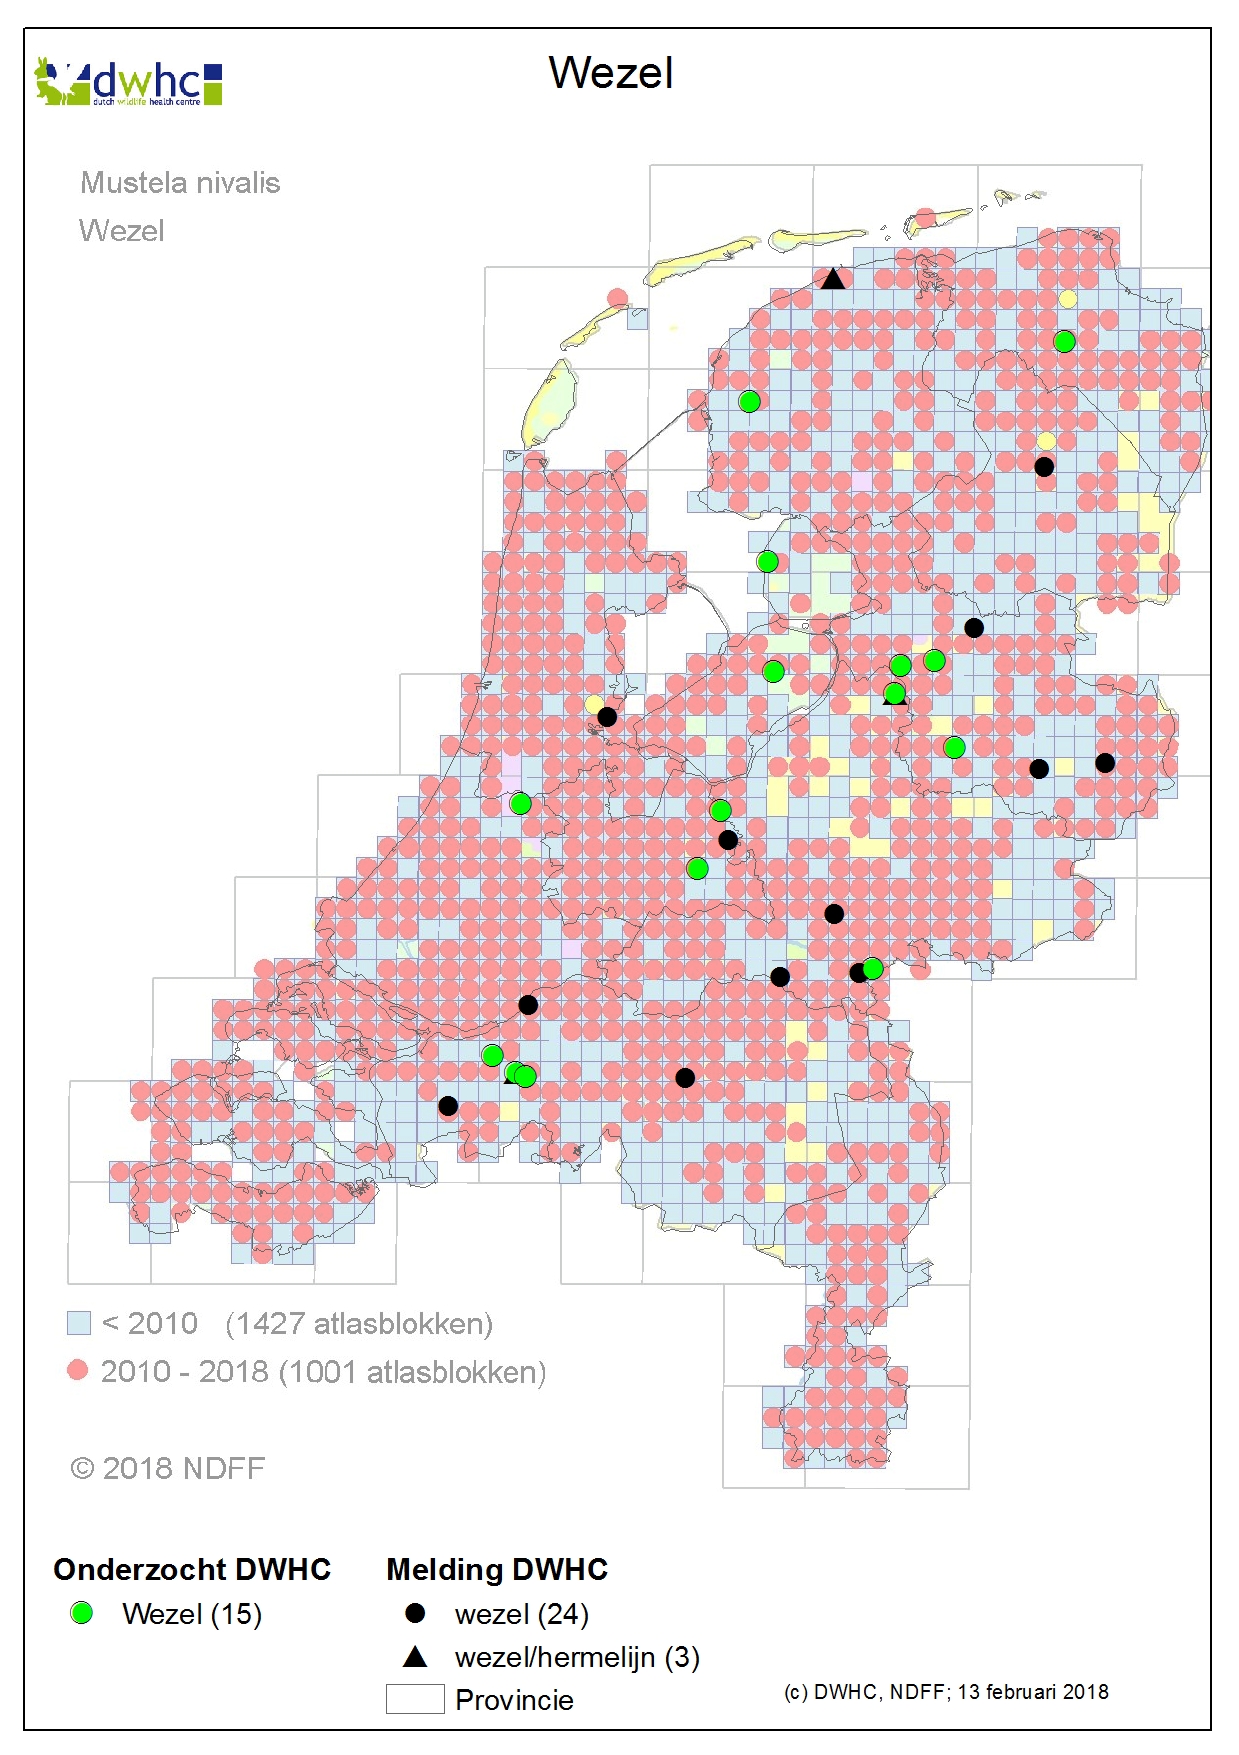 kaart van Nederland met DWHC meldingen en NDFF verspreidingskaart van de wezel